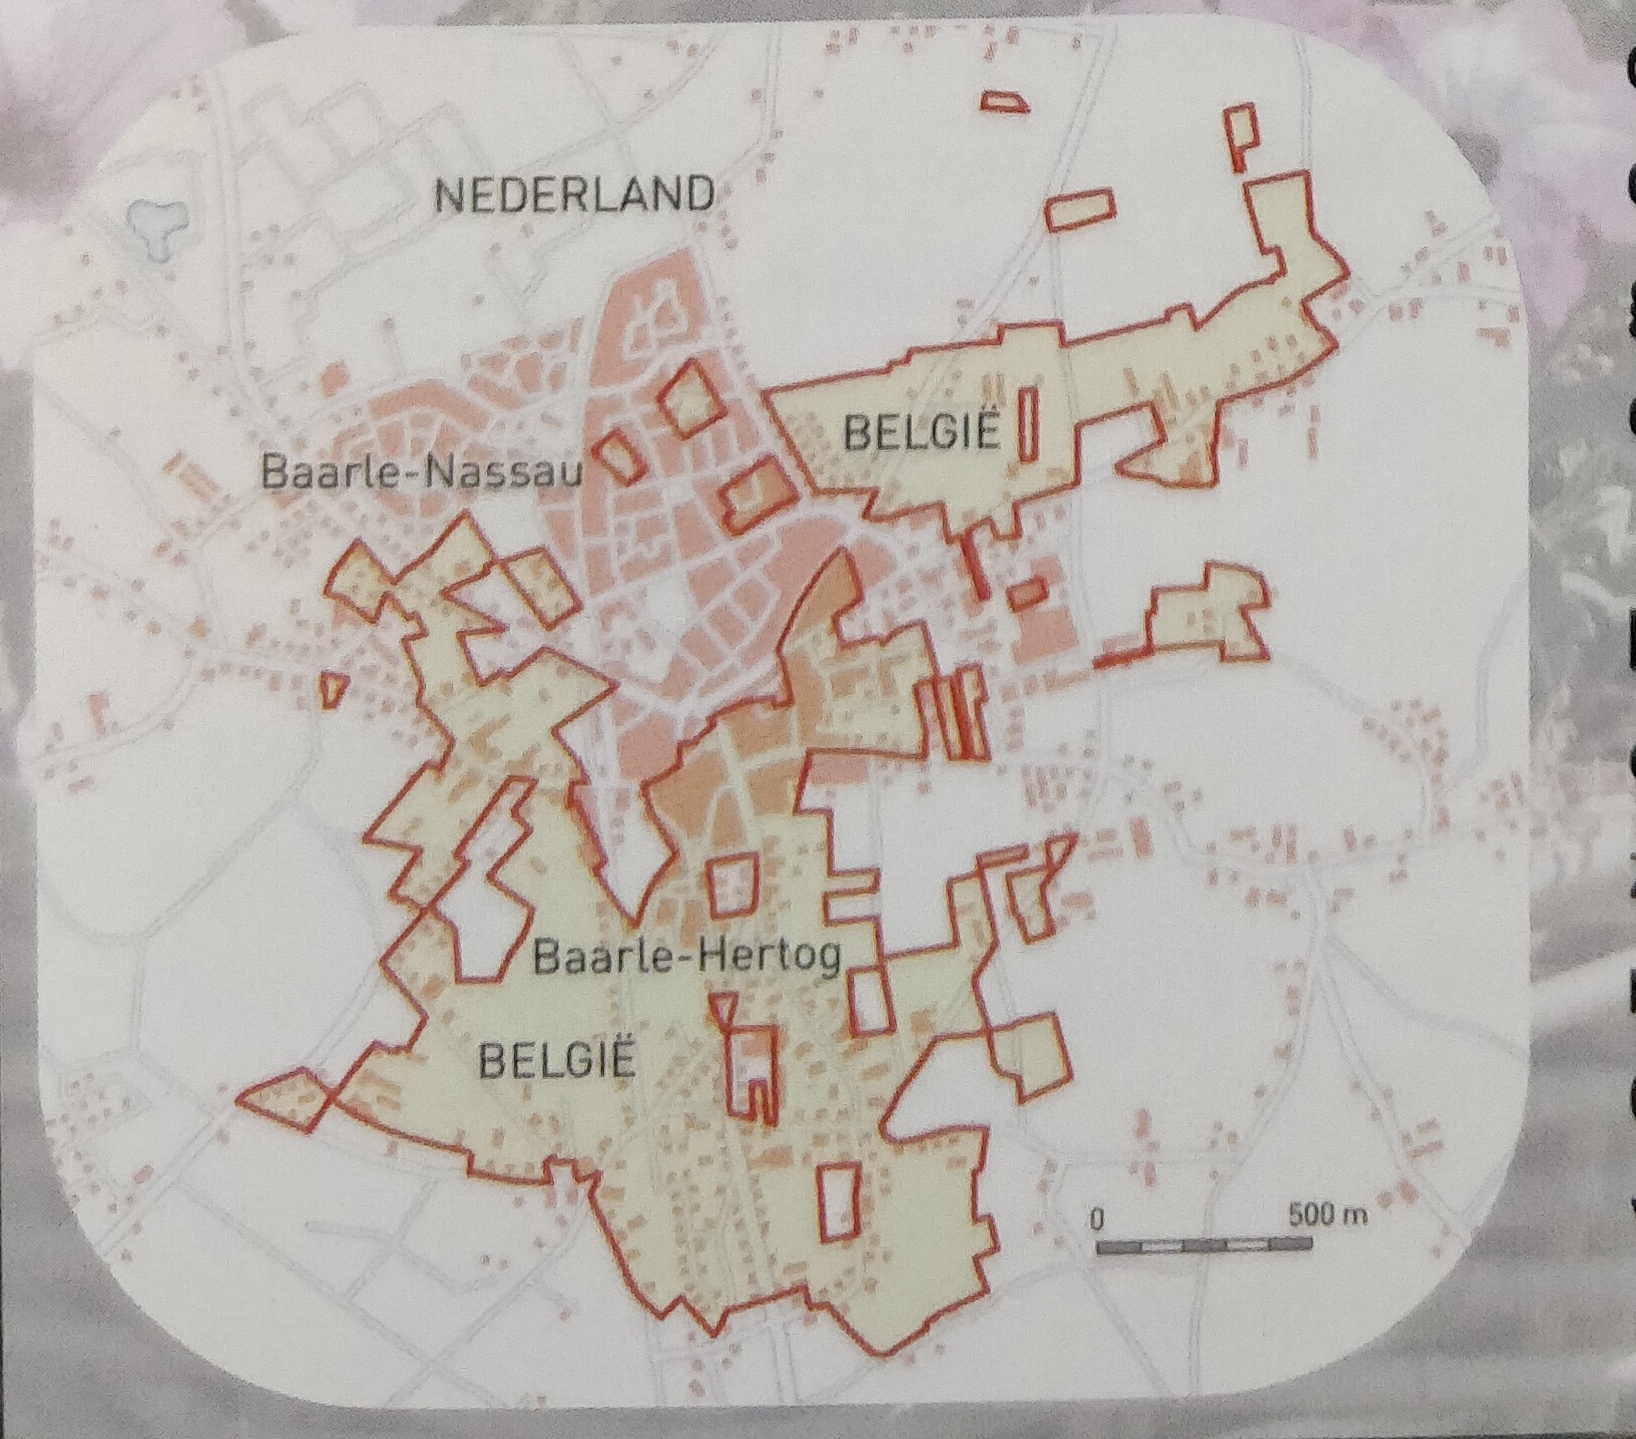 Enclaves in Baarle